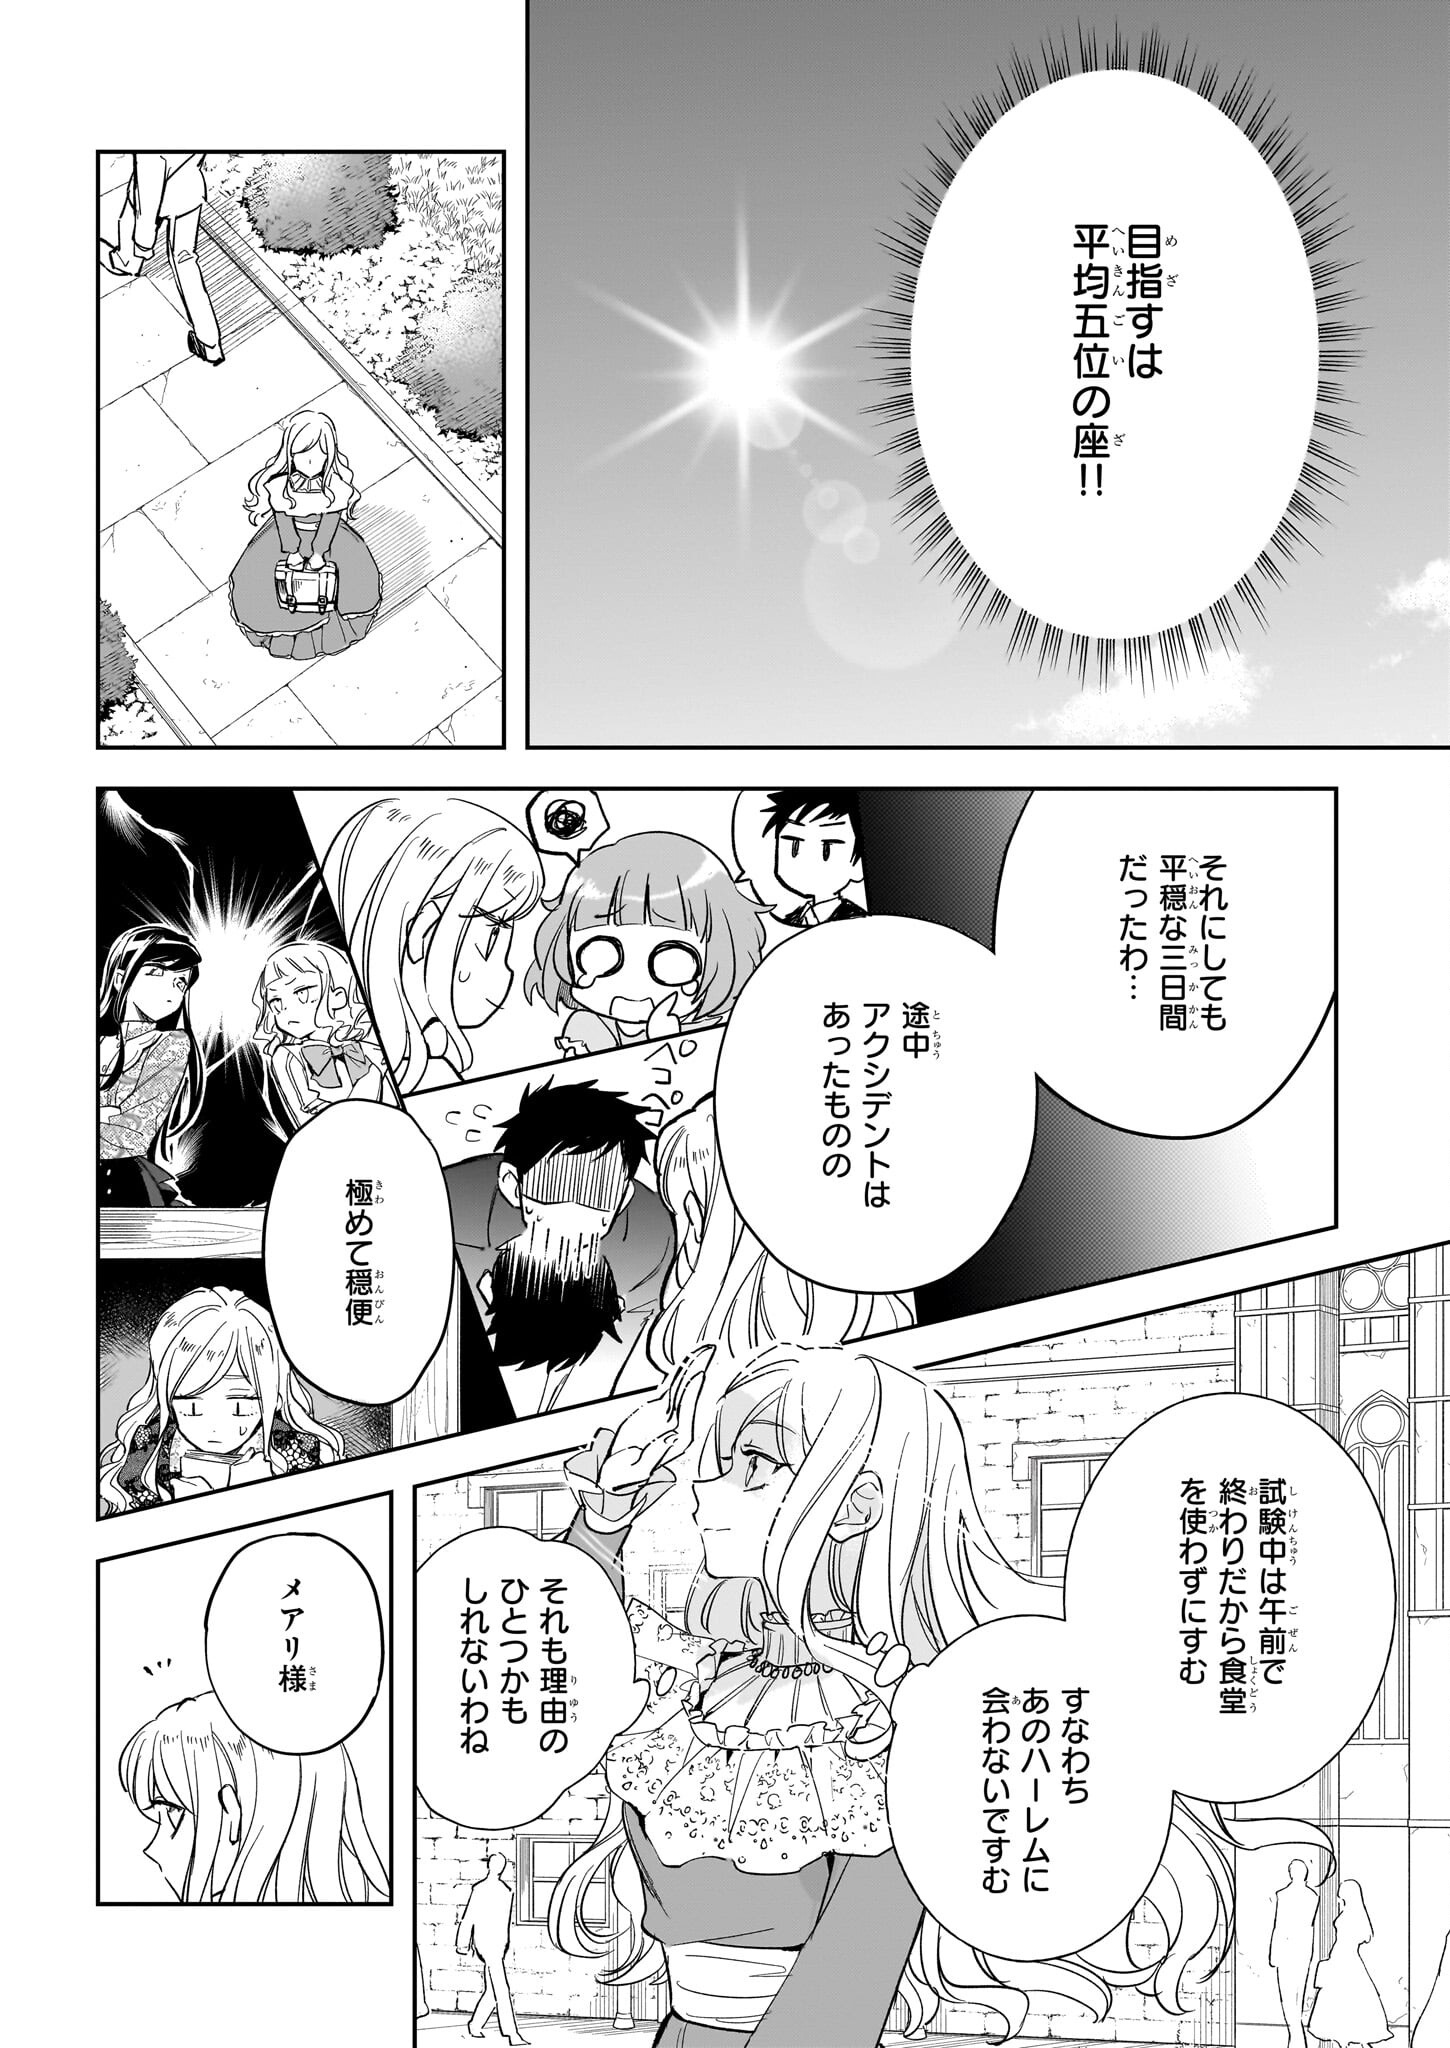 Albert-ke no Reijou wa Botsuraku wo Goshomou desu - Chapter 26.1 - Page 2